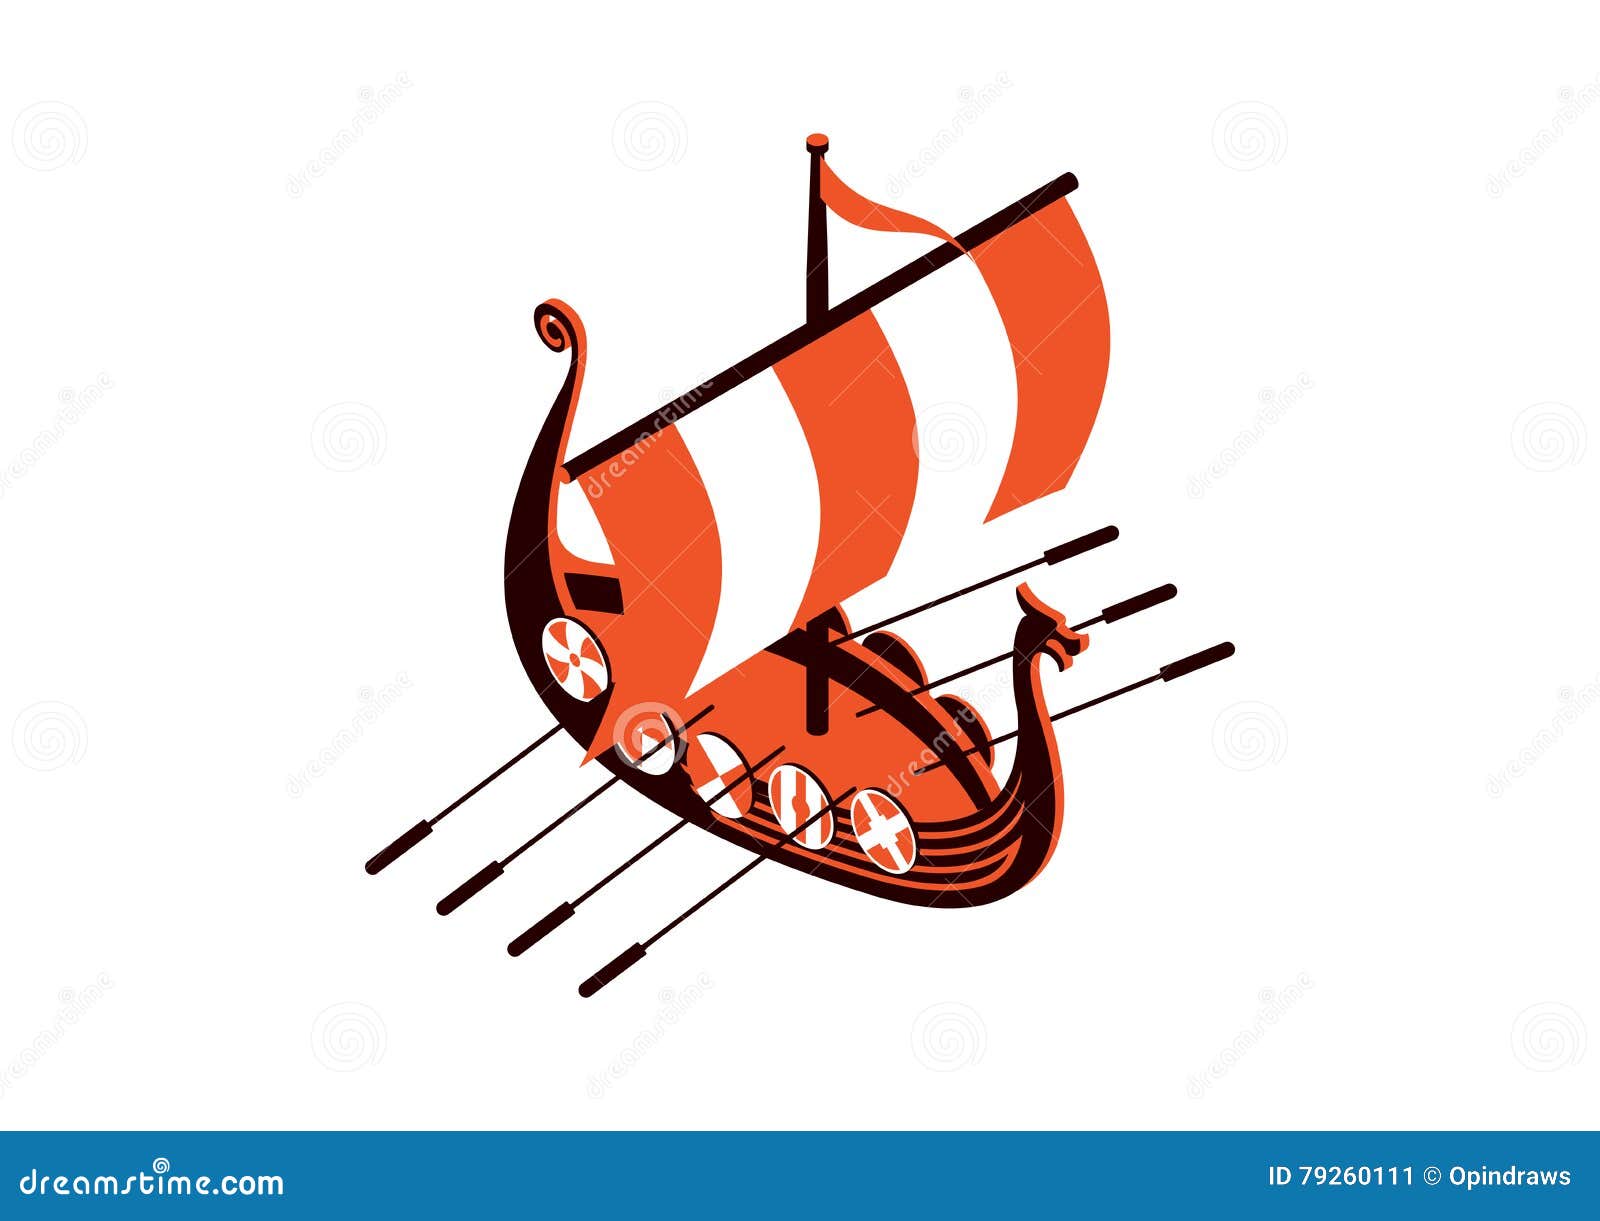 Viking ship stock vector. Illustration of sailboat, warship - 79260111